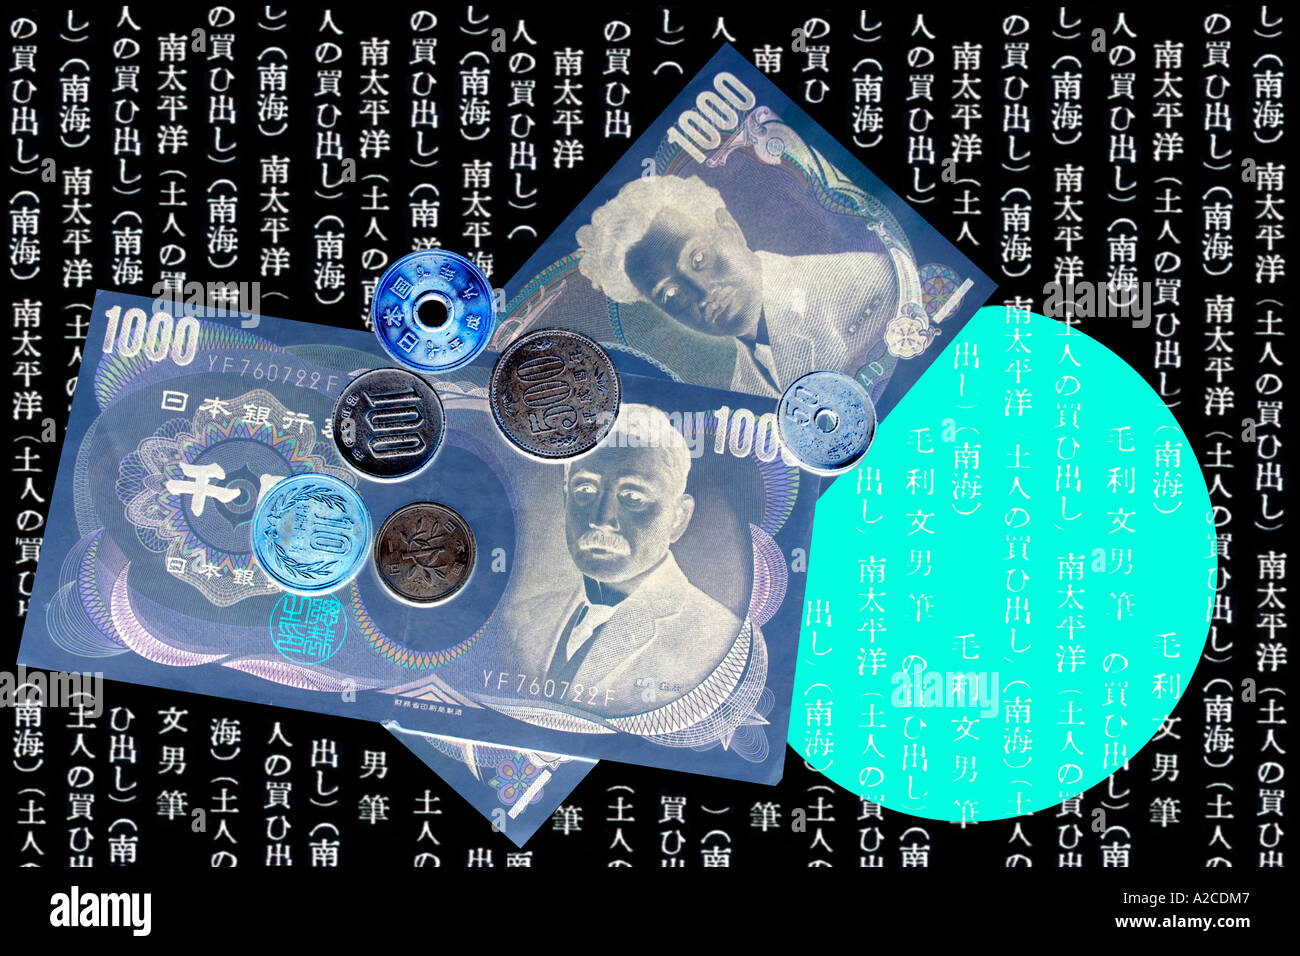 Ein Konzept-Bild der japanischen 1000 Yen-Banknoten und-Münzen gegen eine umgekehrte Hintergrund geschrieben. Stockfoto